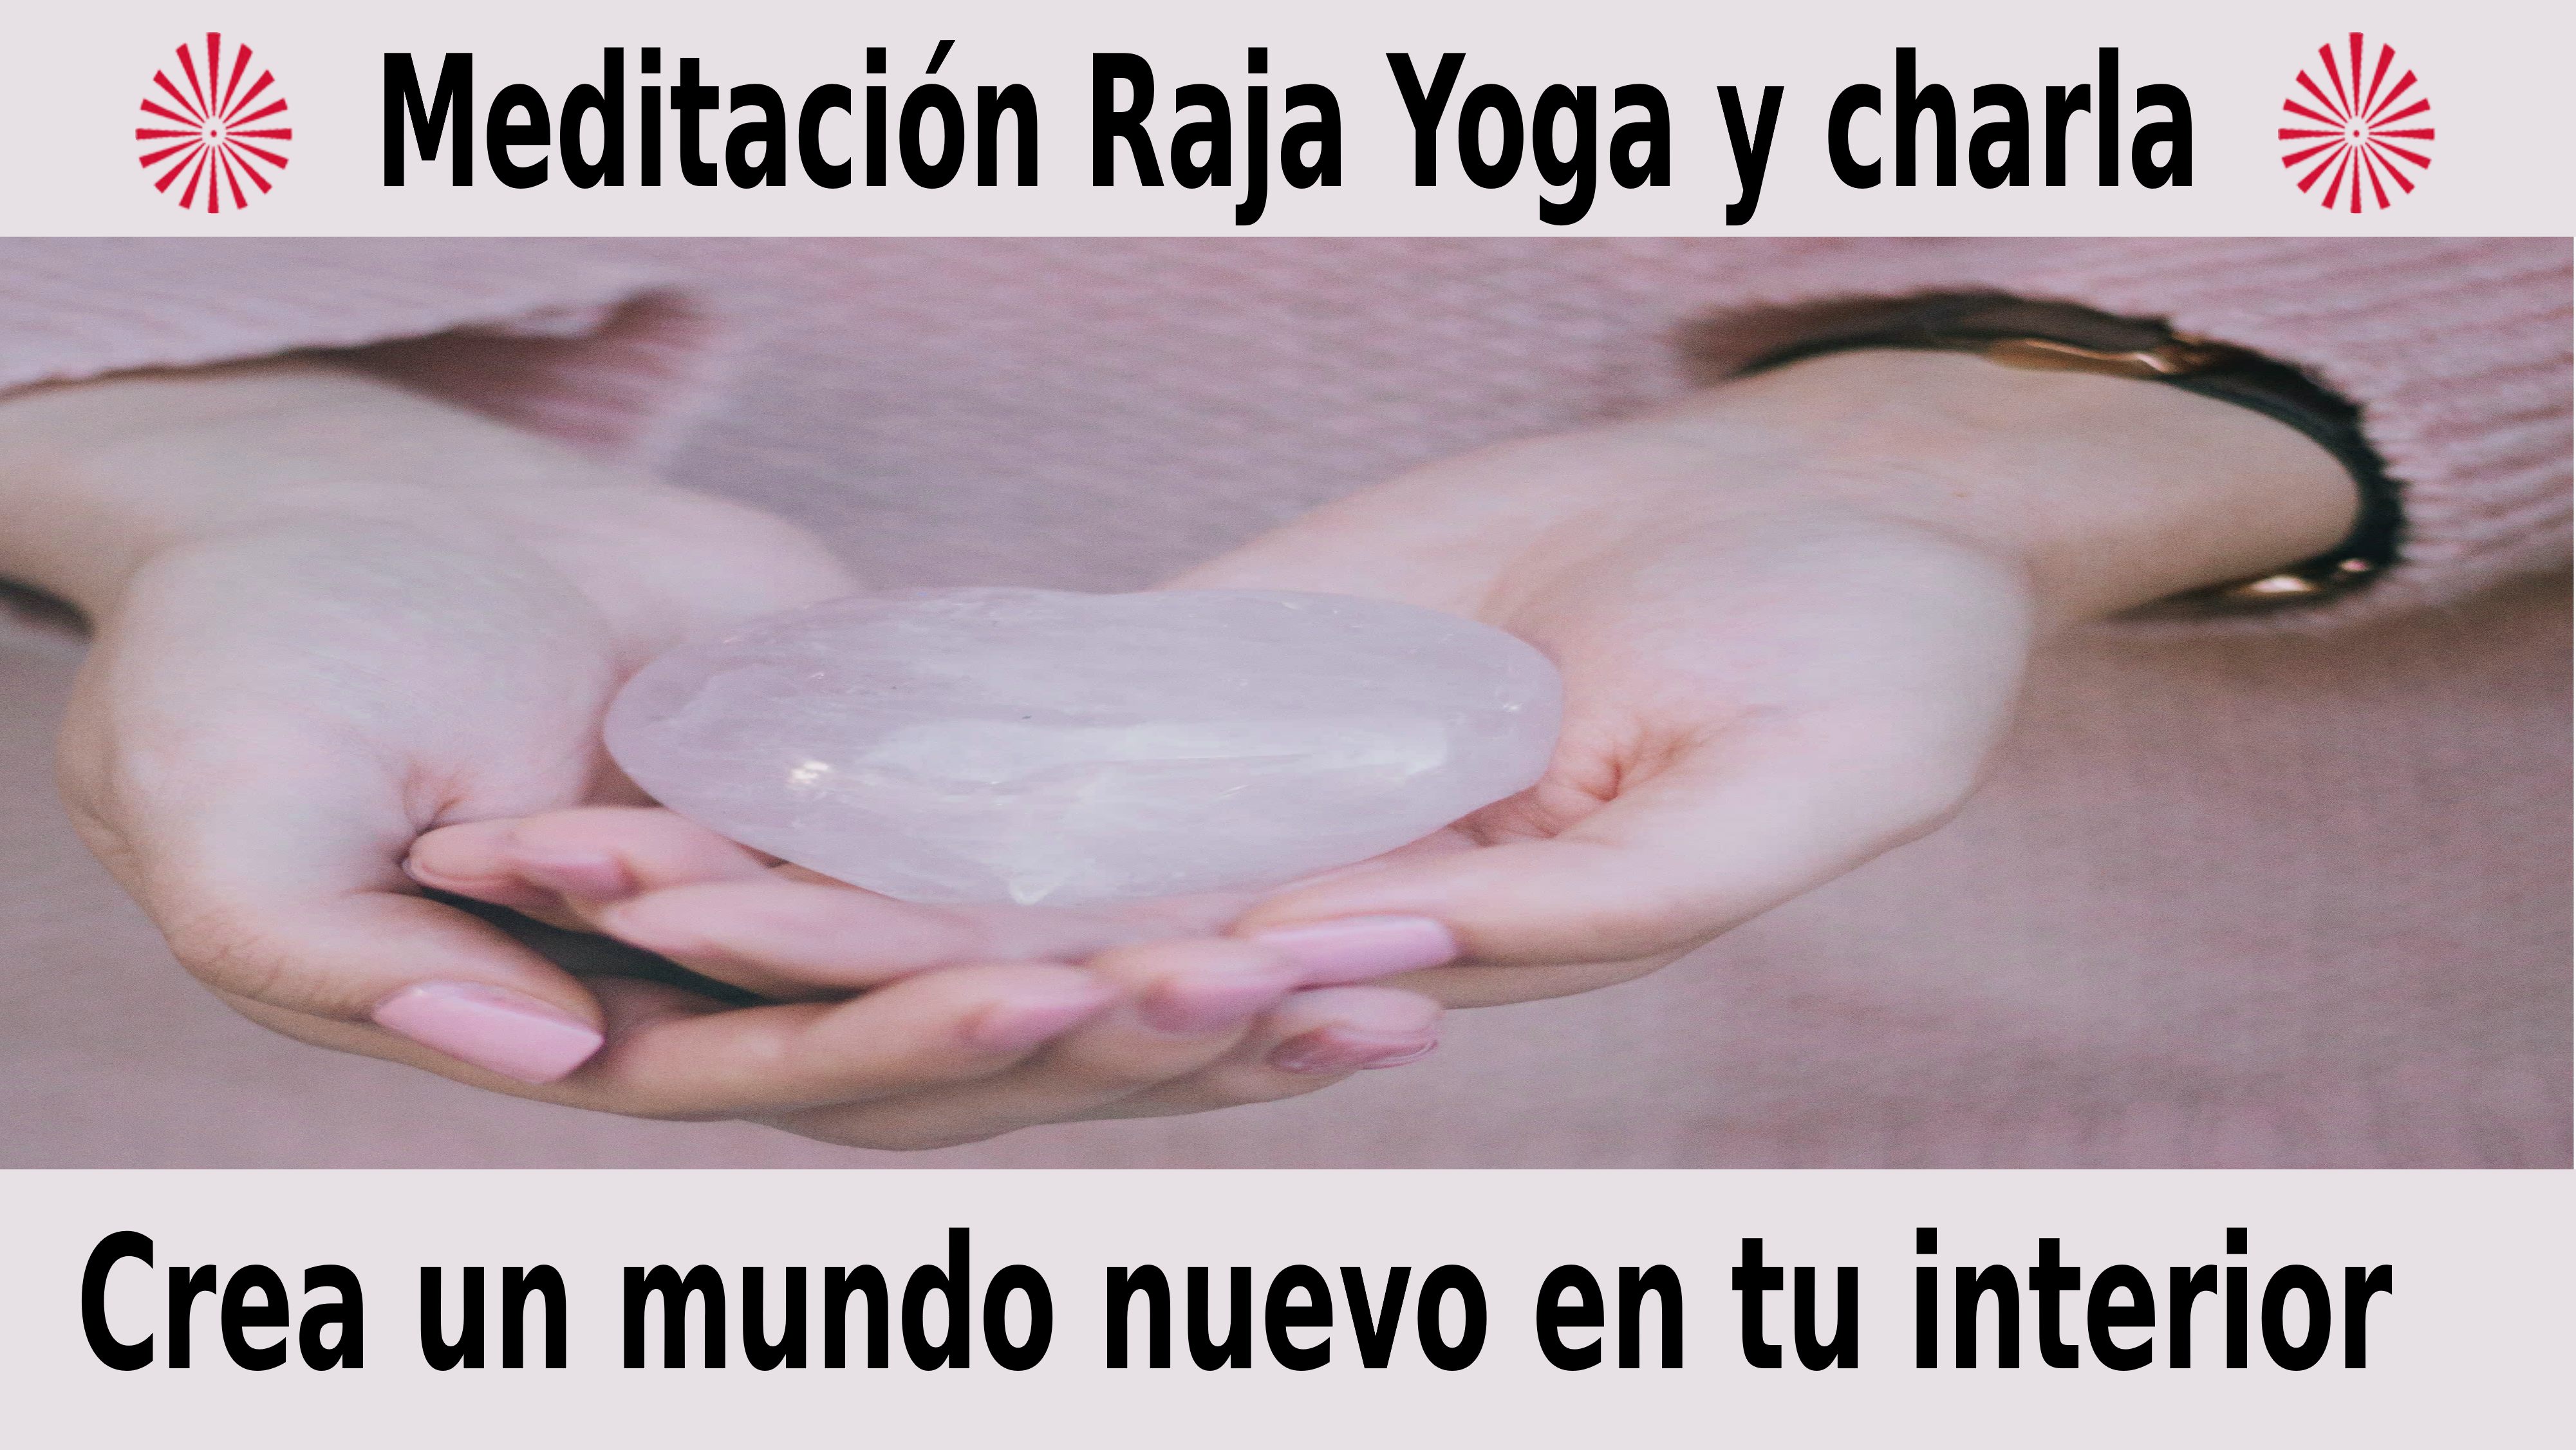 Meditación Raja Yoga y charla: Crea un mundo nuevo en tu interior (8 Diciembre 2020) On-line desde Madrid